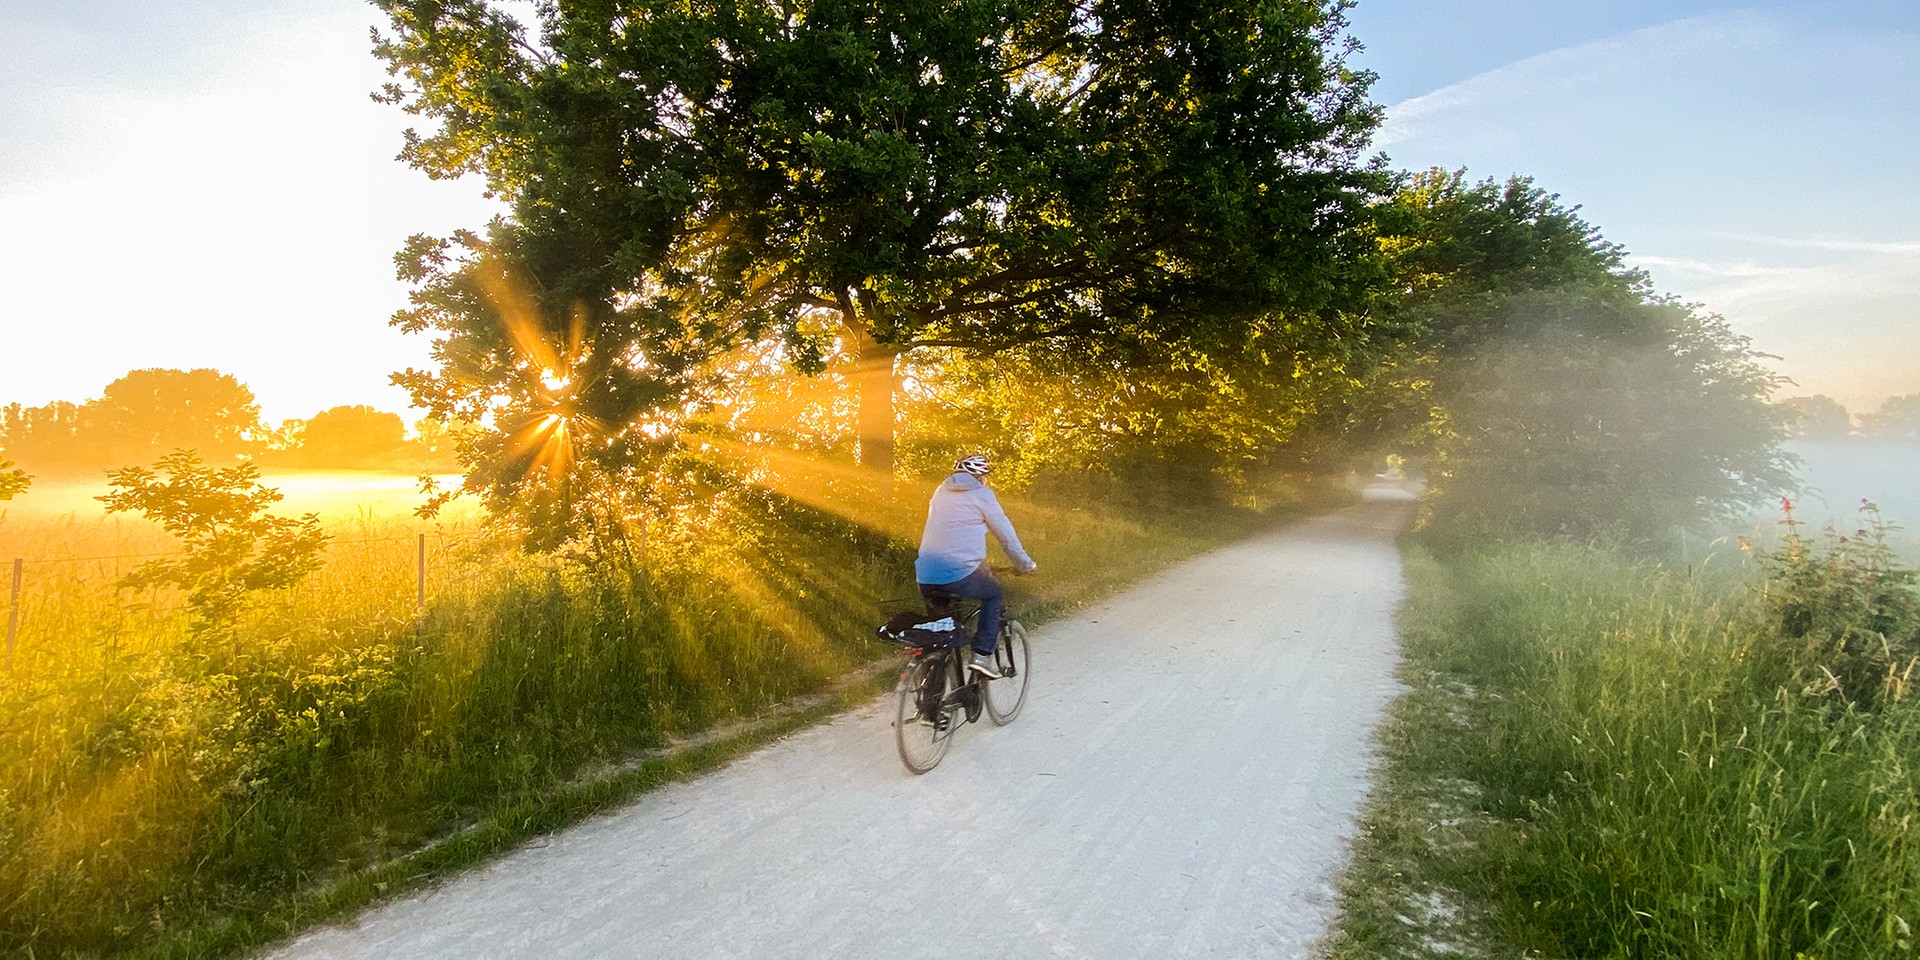 Niedersachsen, Laatzen: Ein Mann fährt mit einem Fahrrad um 5:40 Uhr bei Sonnenaufgang und leichten Bodennebel durch die Leinemasch in der Region Hannover.